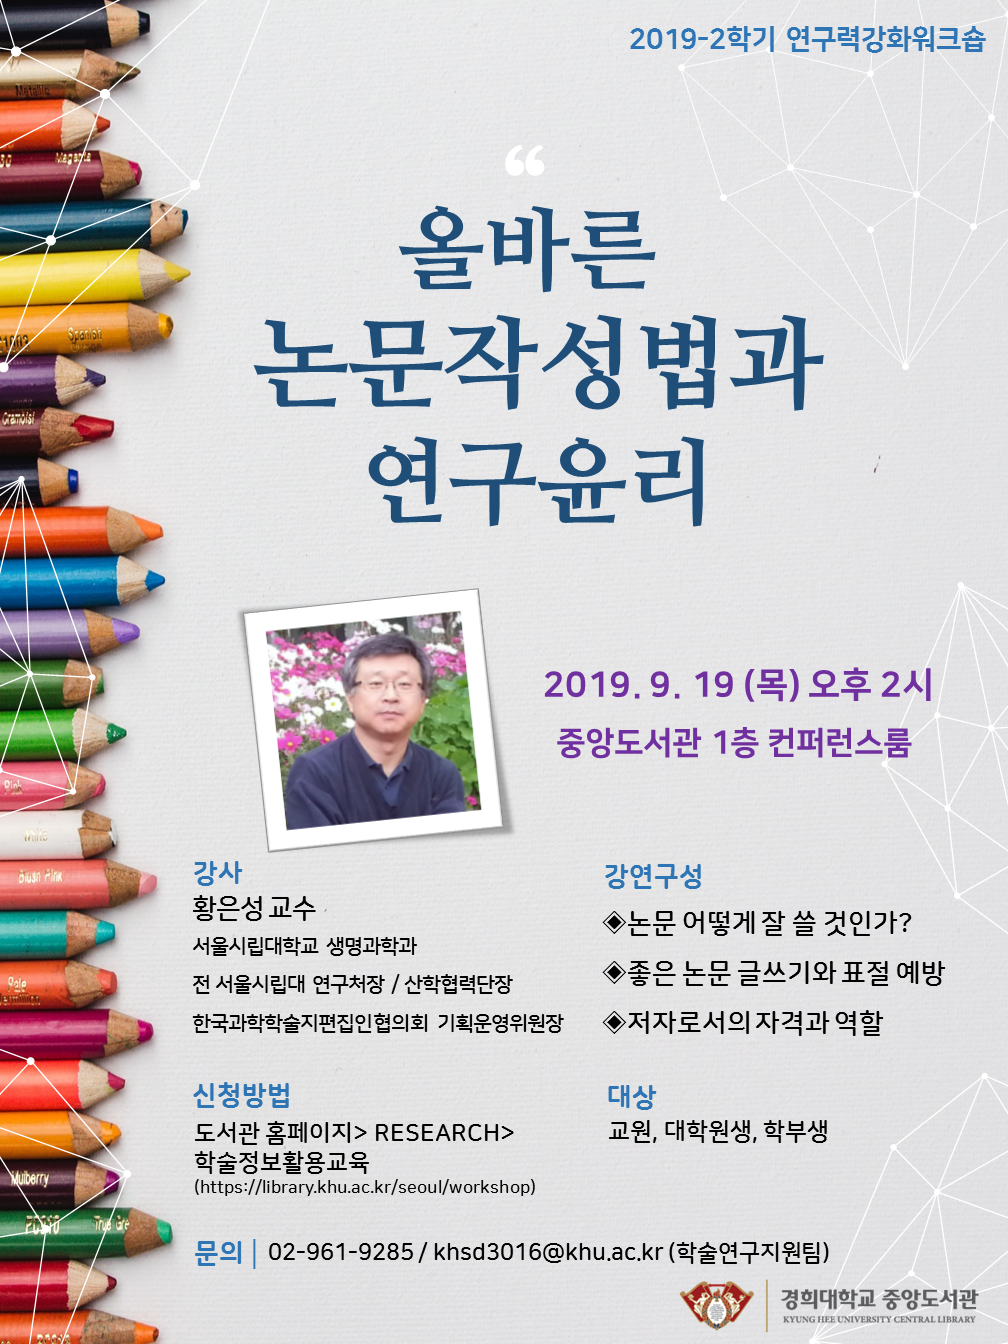 올바른 논문작성법과 연구윤리특강 포스터_2019.9.19(2시).png